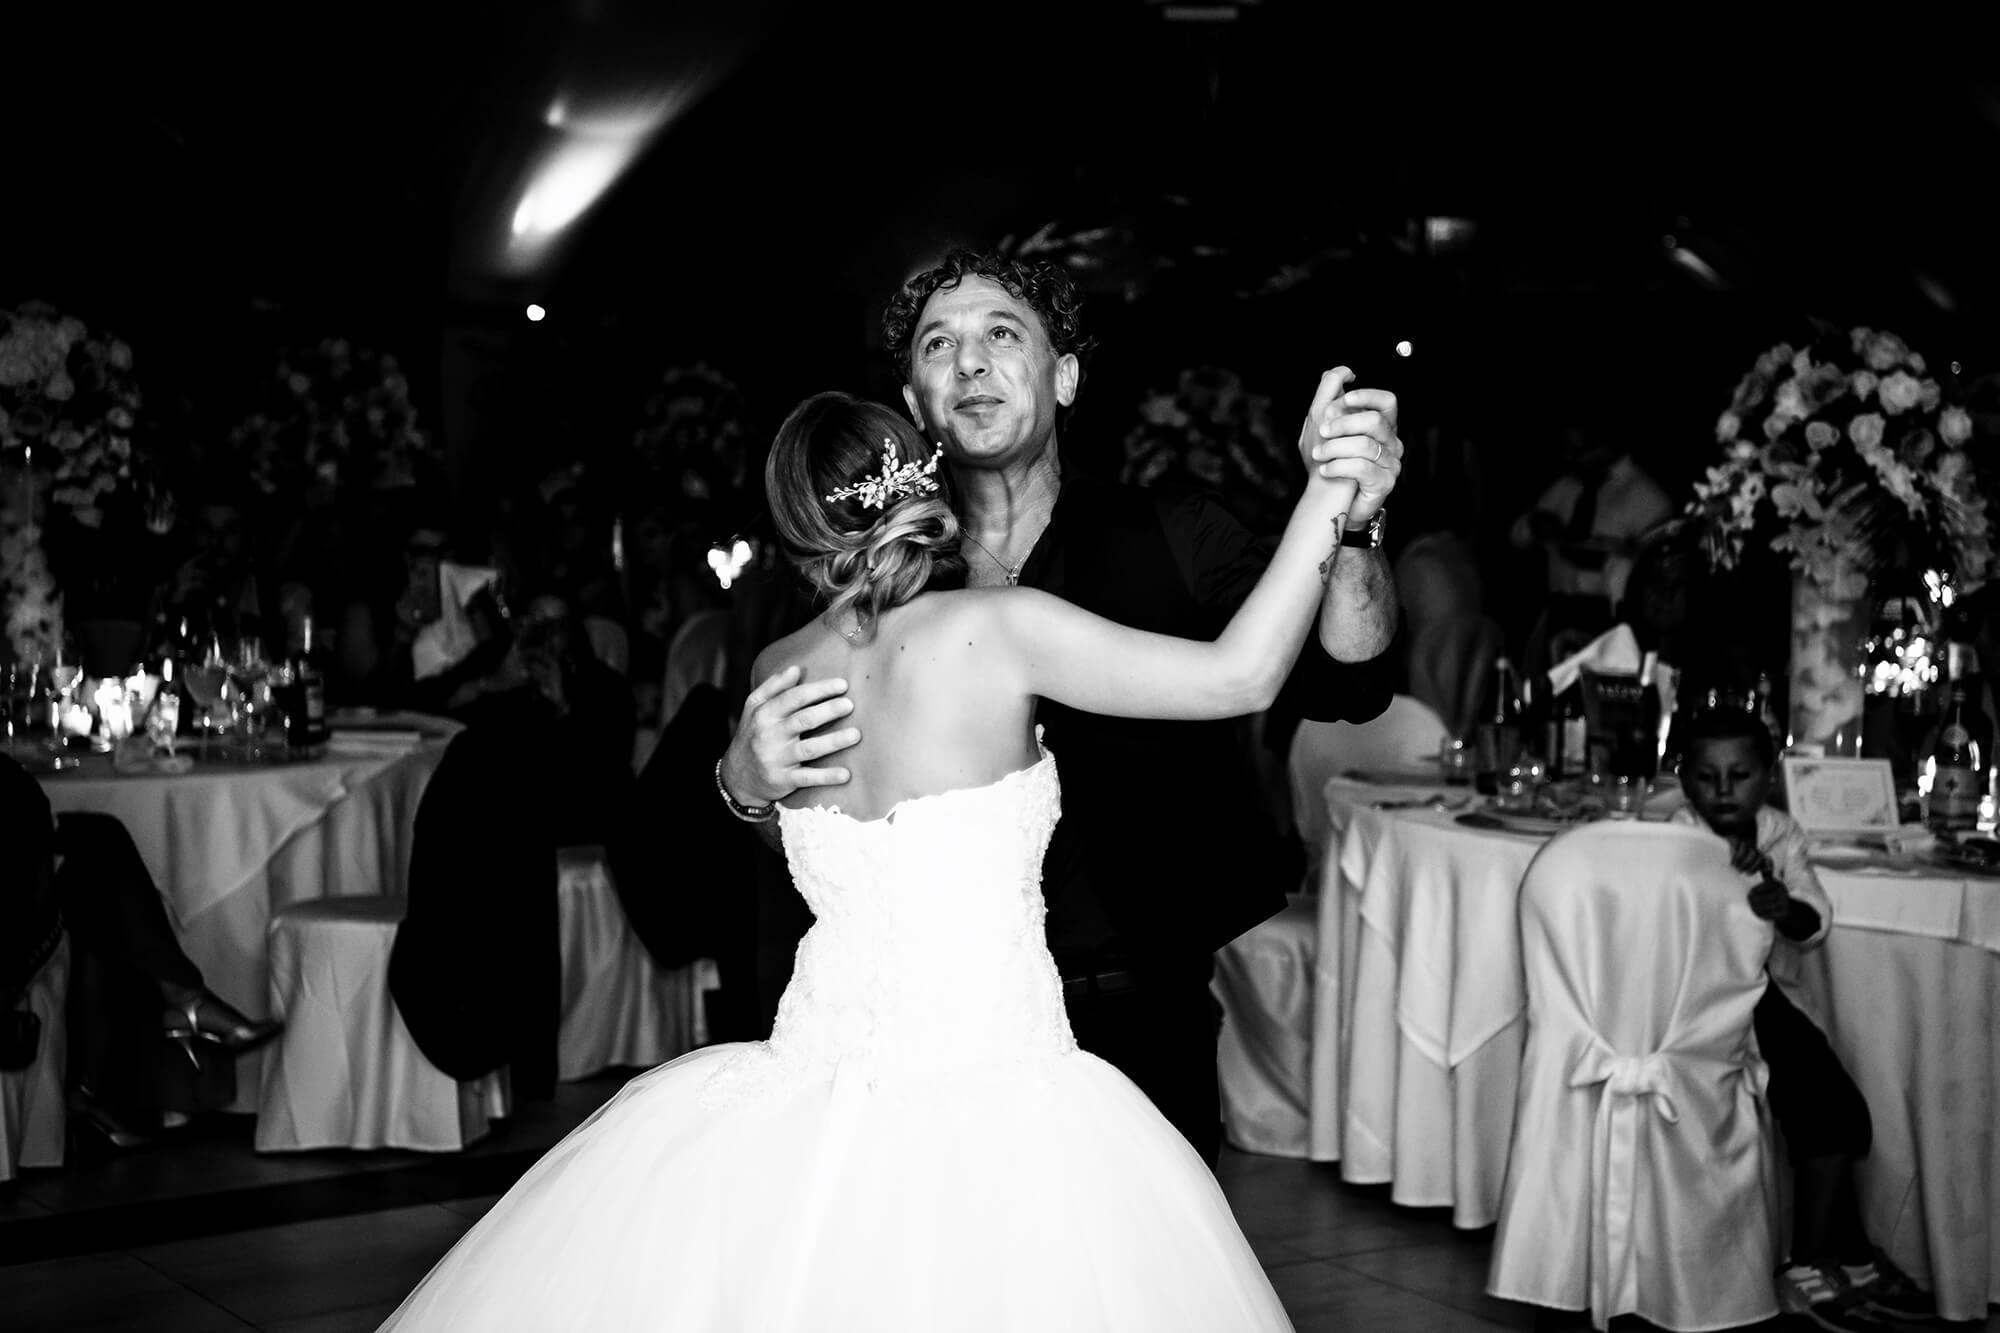 il foto del ballo della sposa con il papà al Lago Bin, location per matrimoni in provincia di Imperia.